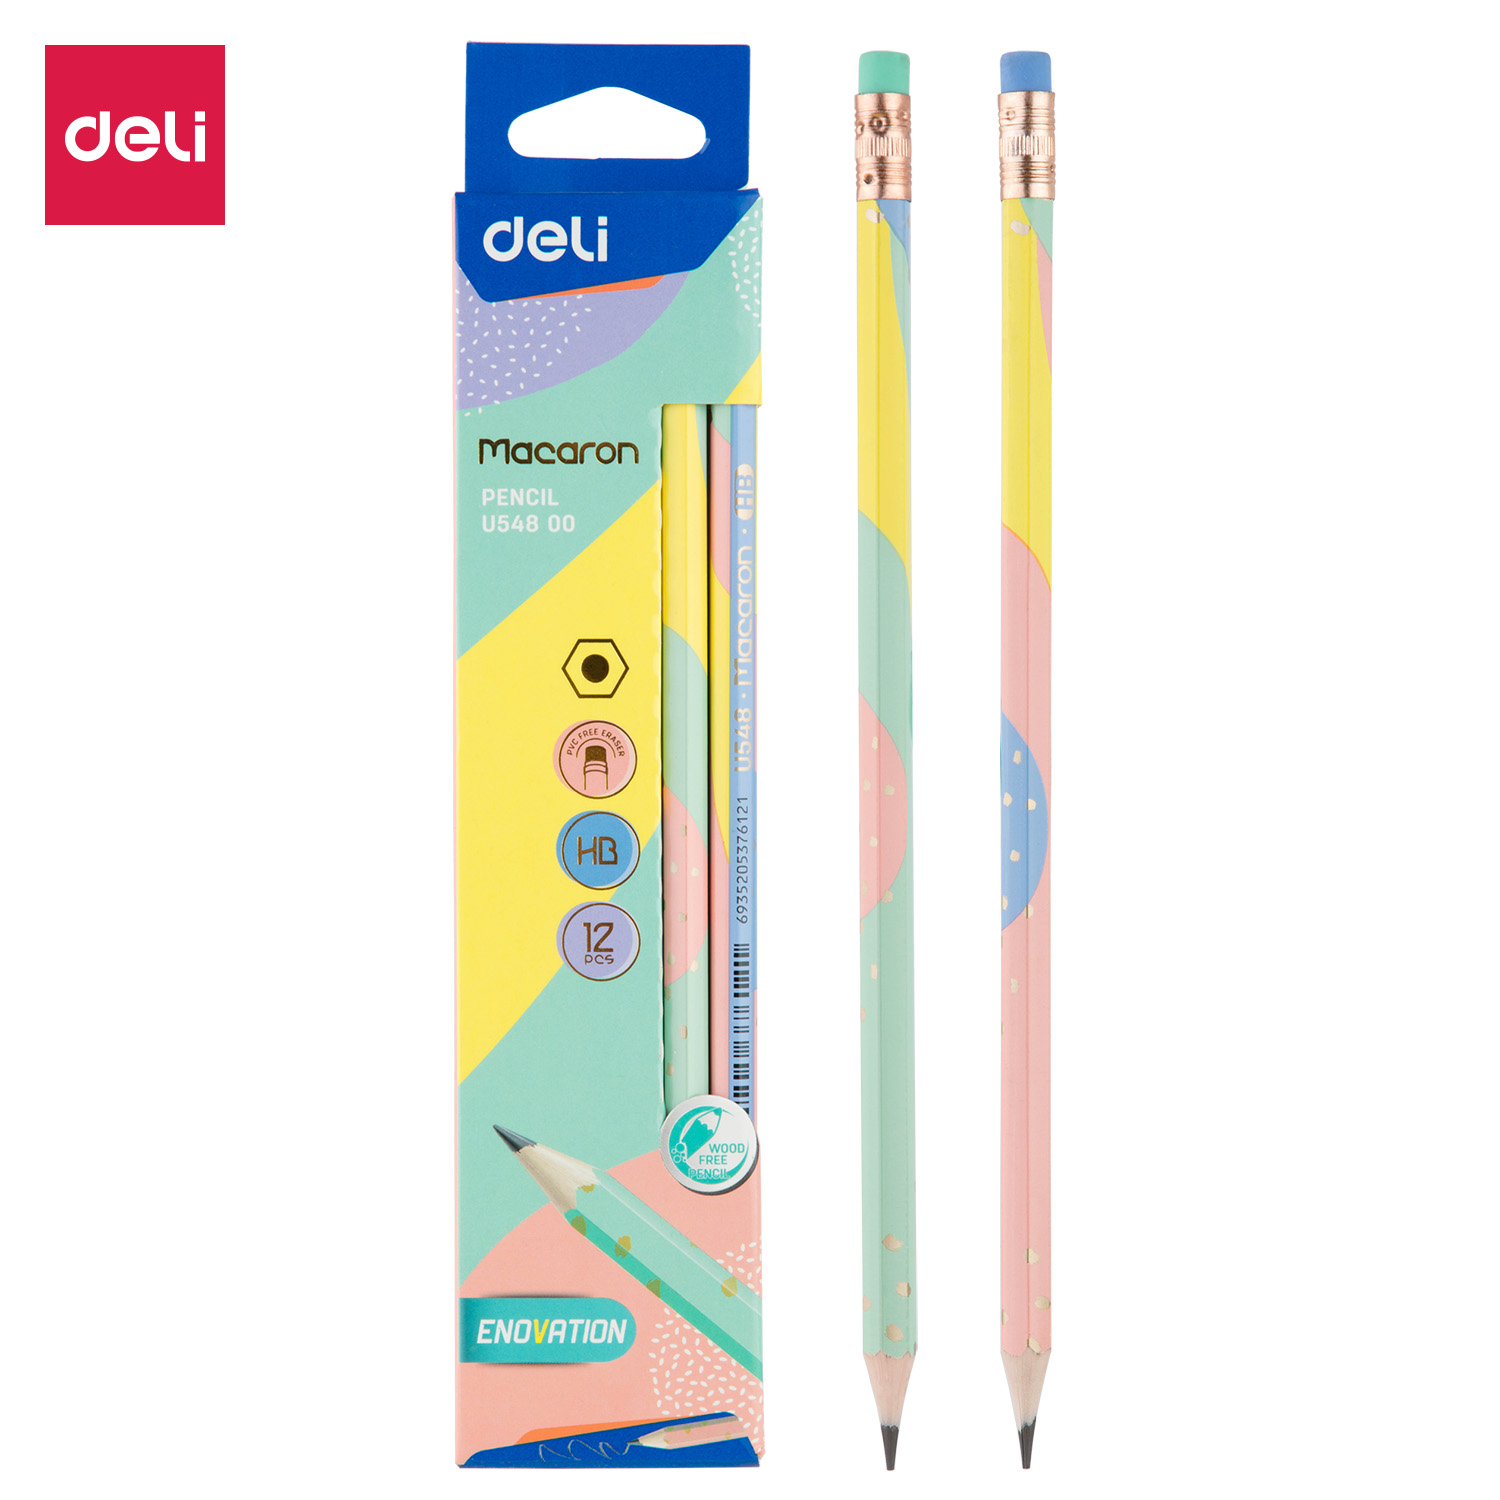 Deli-EU54800 Pencil